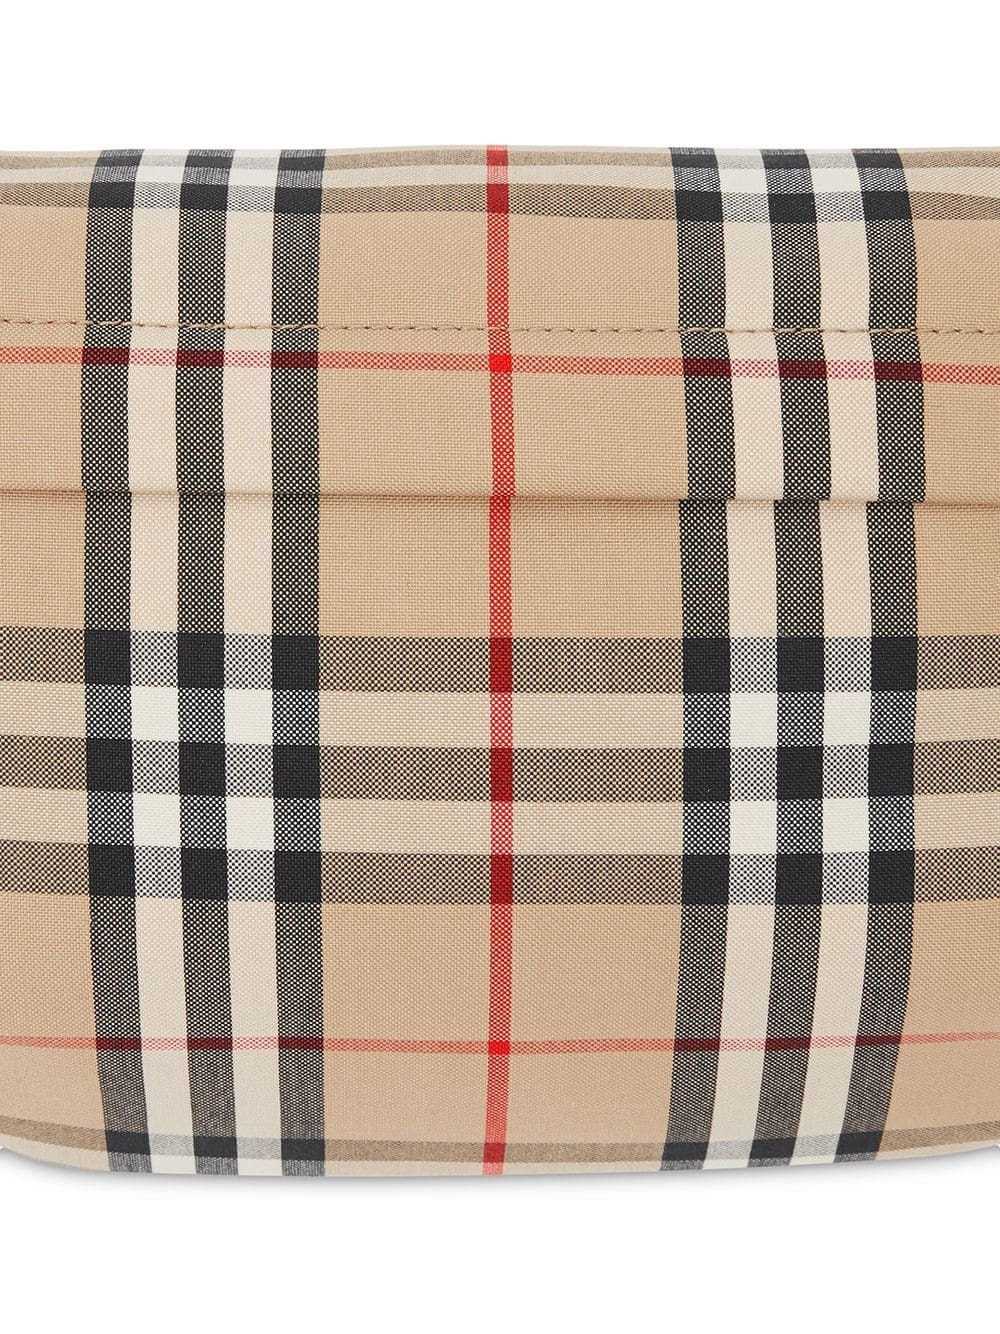 Burberry Medium Vintage Check Bonded Cotton Bum Bag, $1,476, farfetch.com